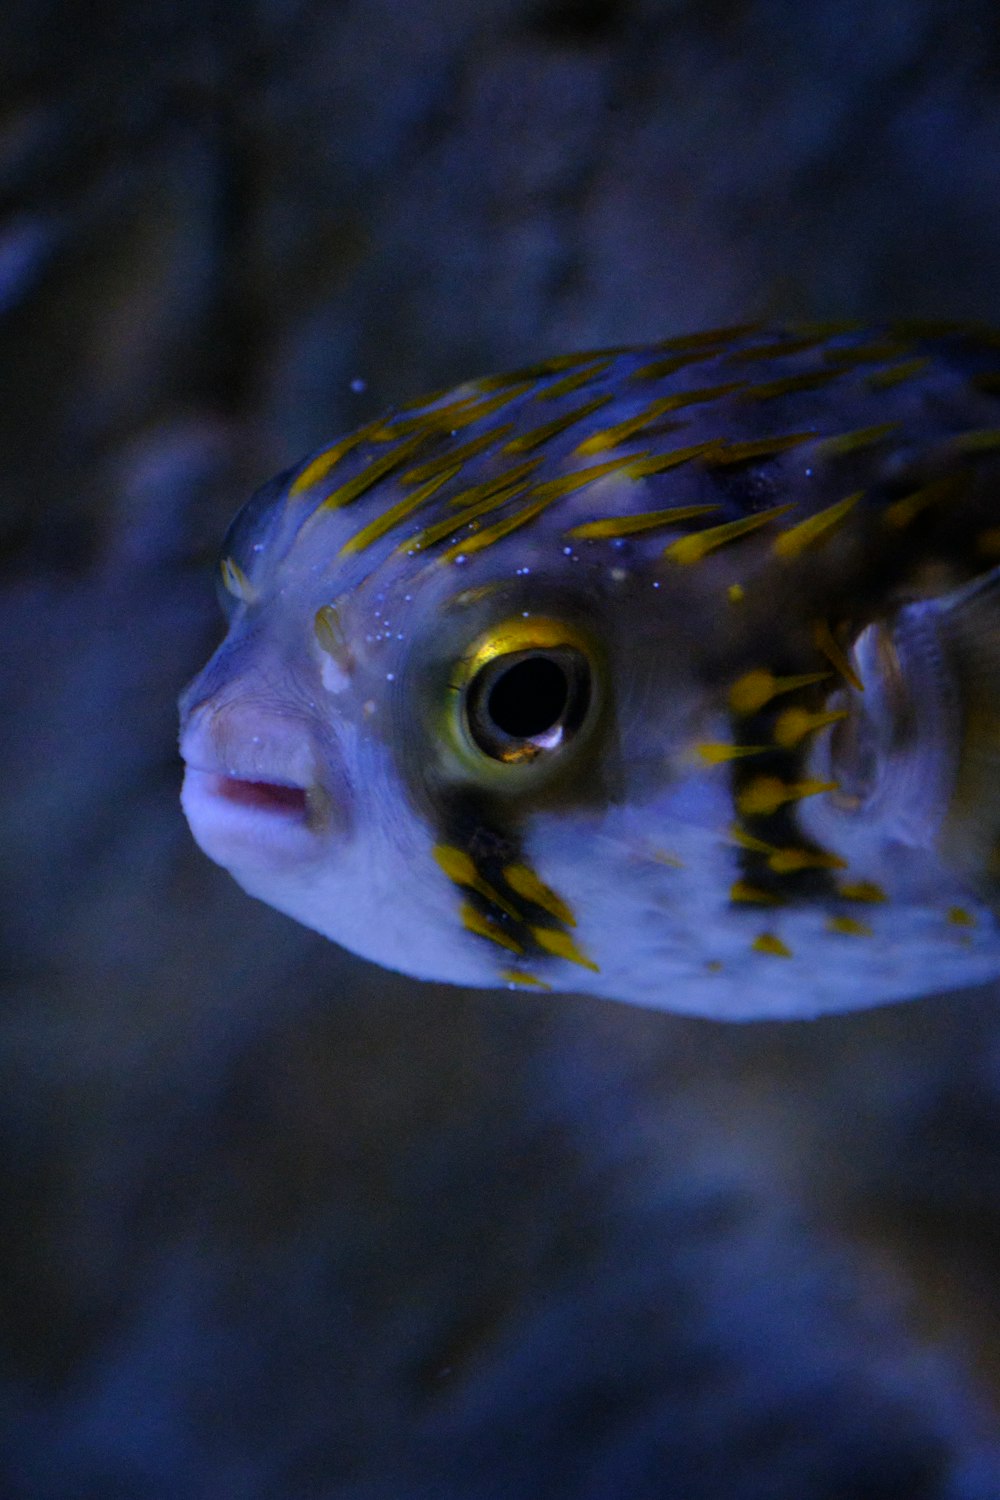 um peixe com uma cauda listrada amarela e azul